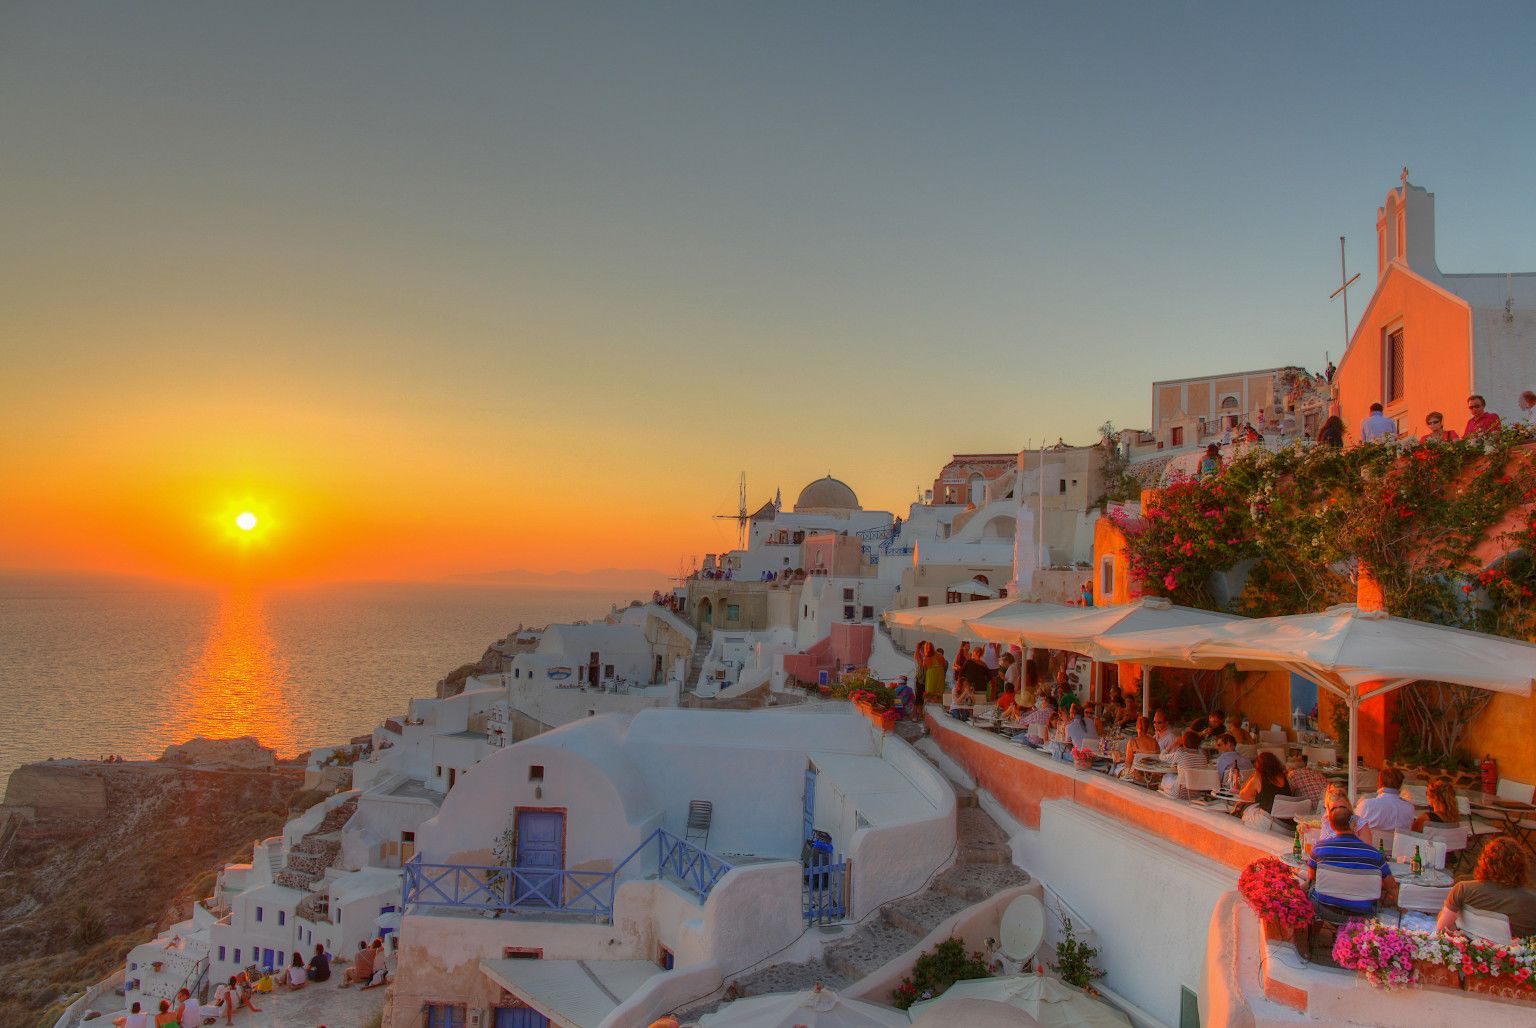 10 Spot Sunset Paling Indah di Dunia, Cantiknya Gak Main-main